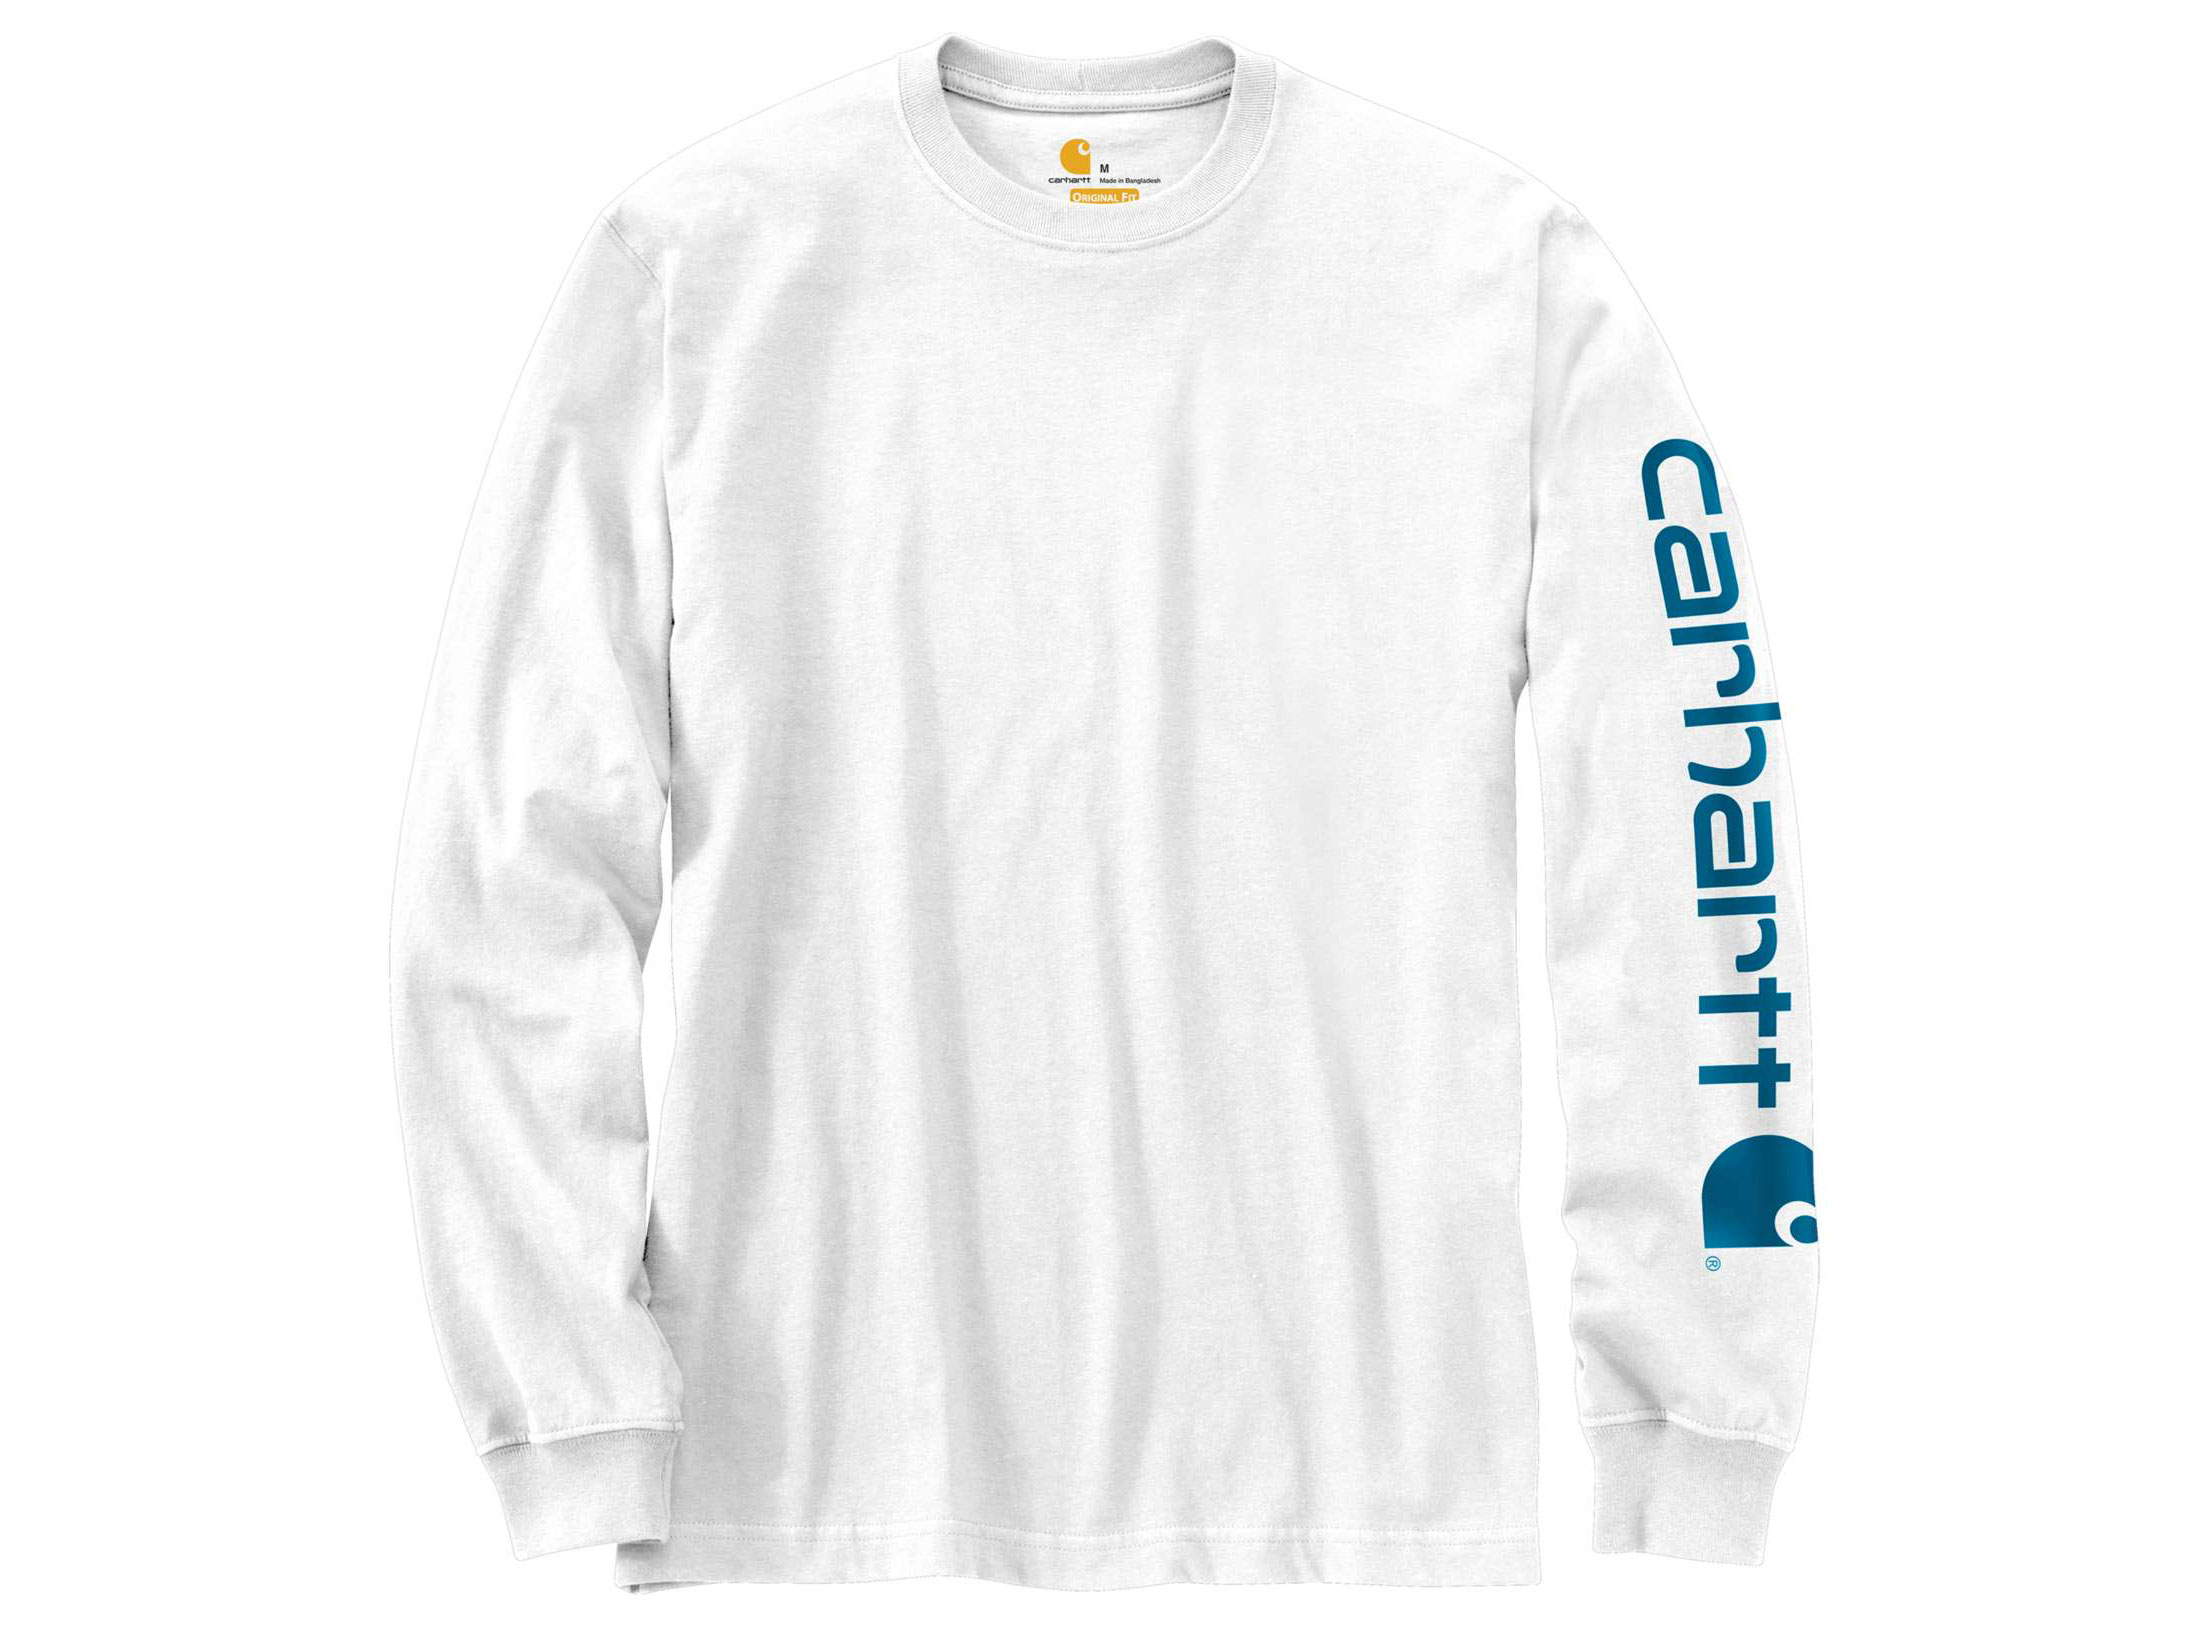 Carhartt Men's Signature Sleeve Logo T-Shirt Long Sleeve Cotton